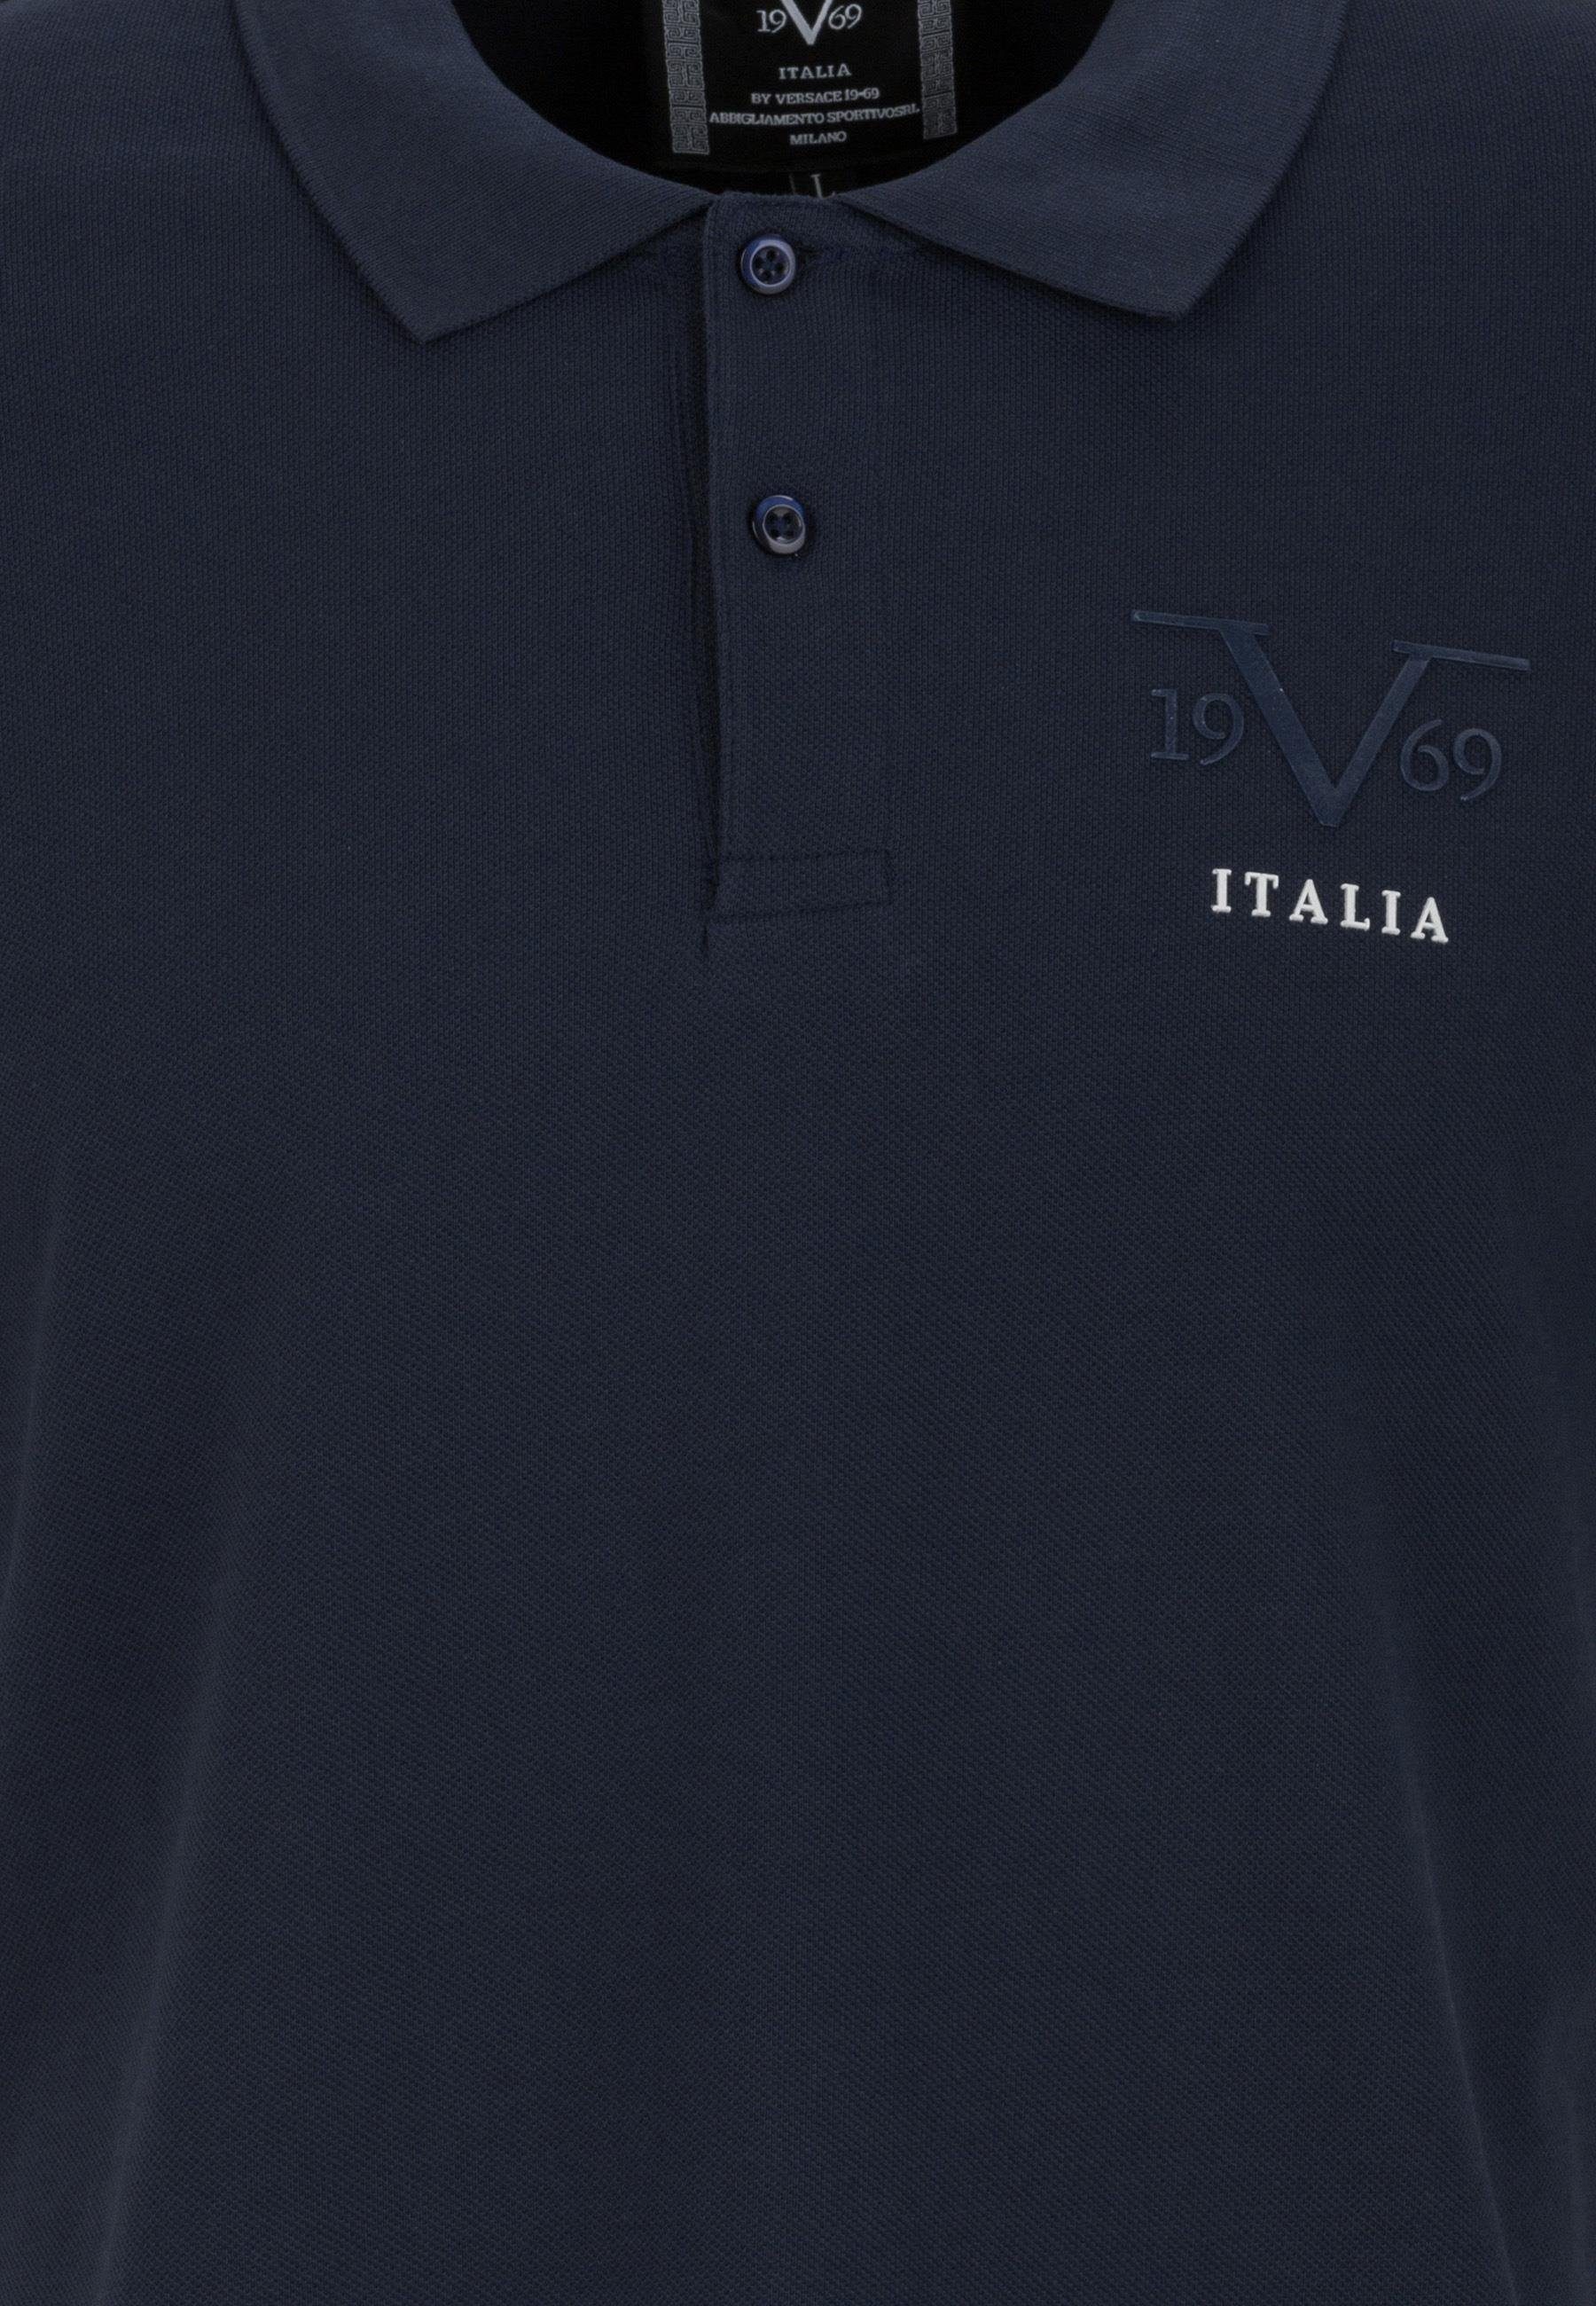 Harry Polo T-Shirt blau by Italia Versace Shirt 19V69